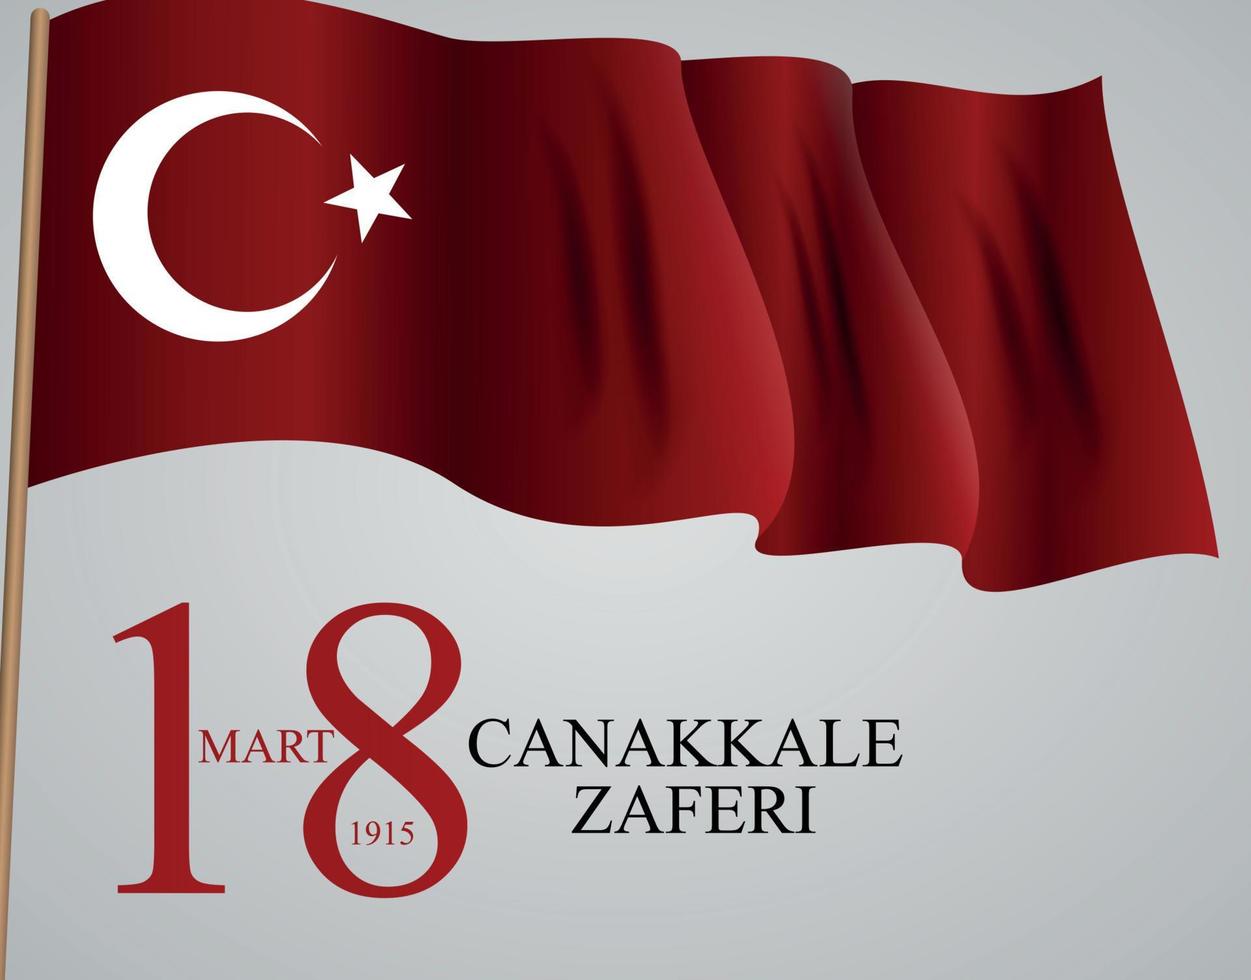 18 marts canakkale zaferi. traduction 18 mars, jour de la victoire de canakkale. illustration vectorielle vecteur